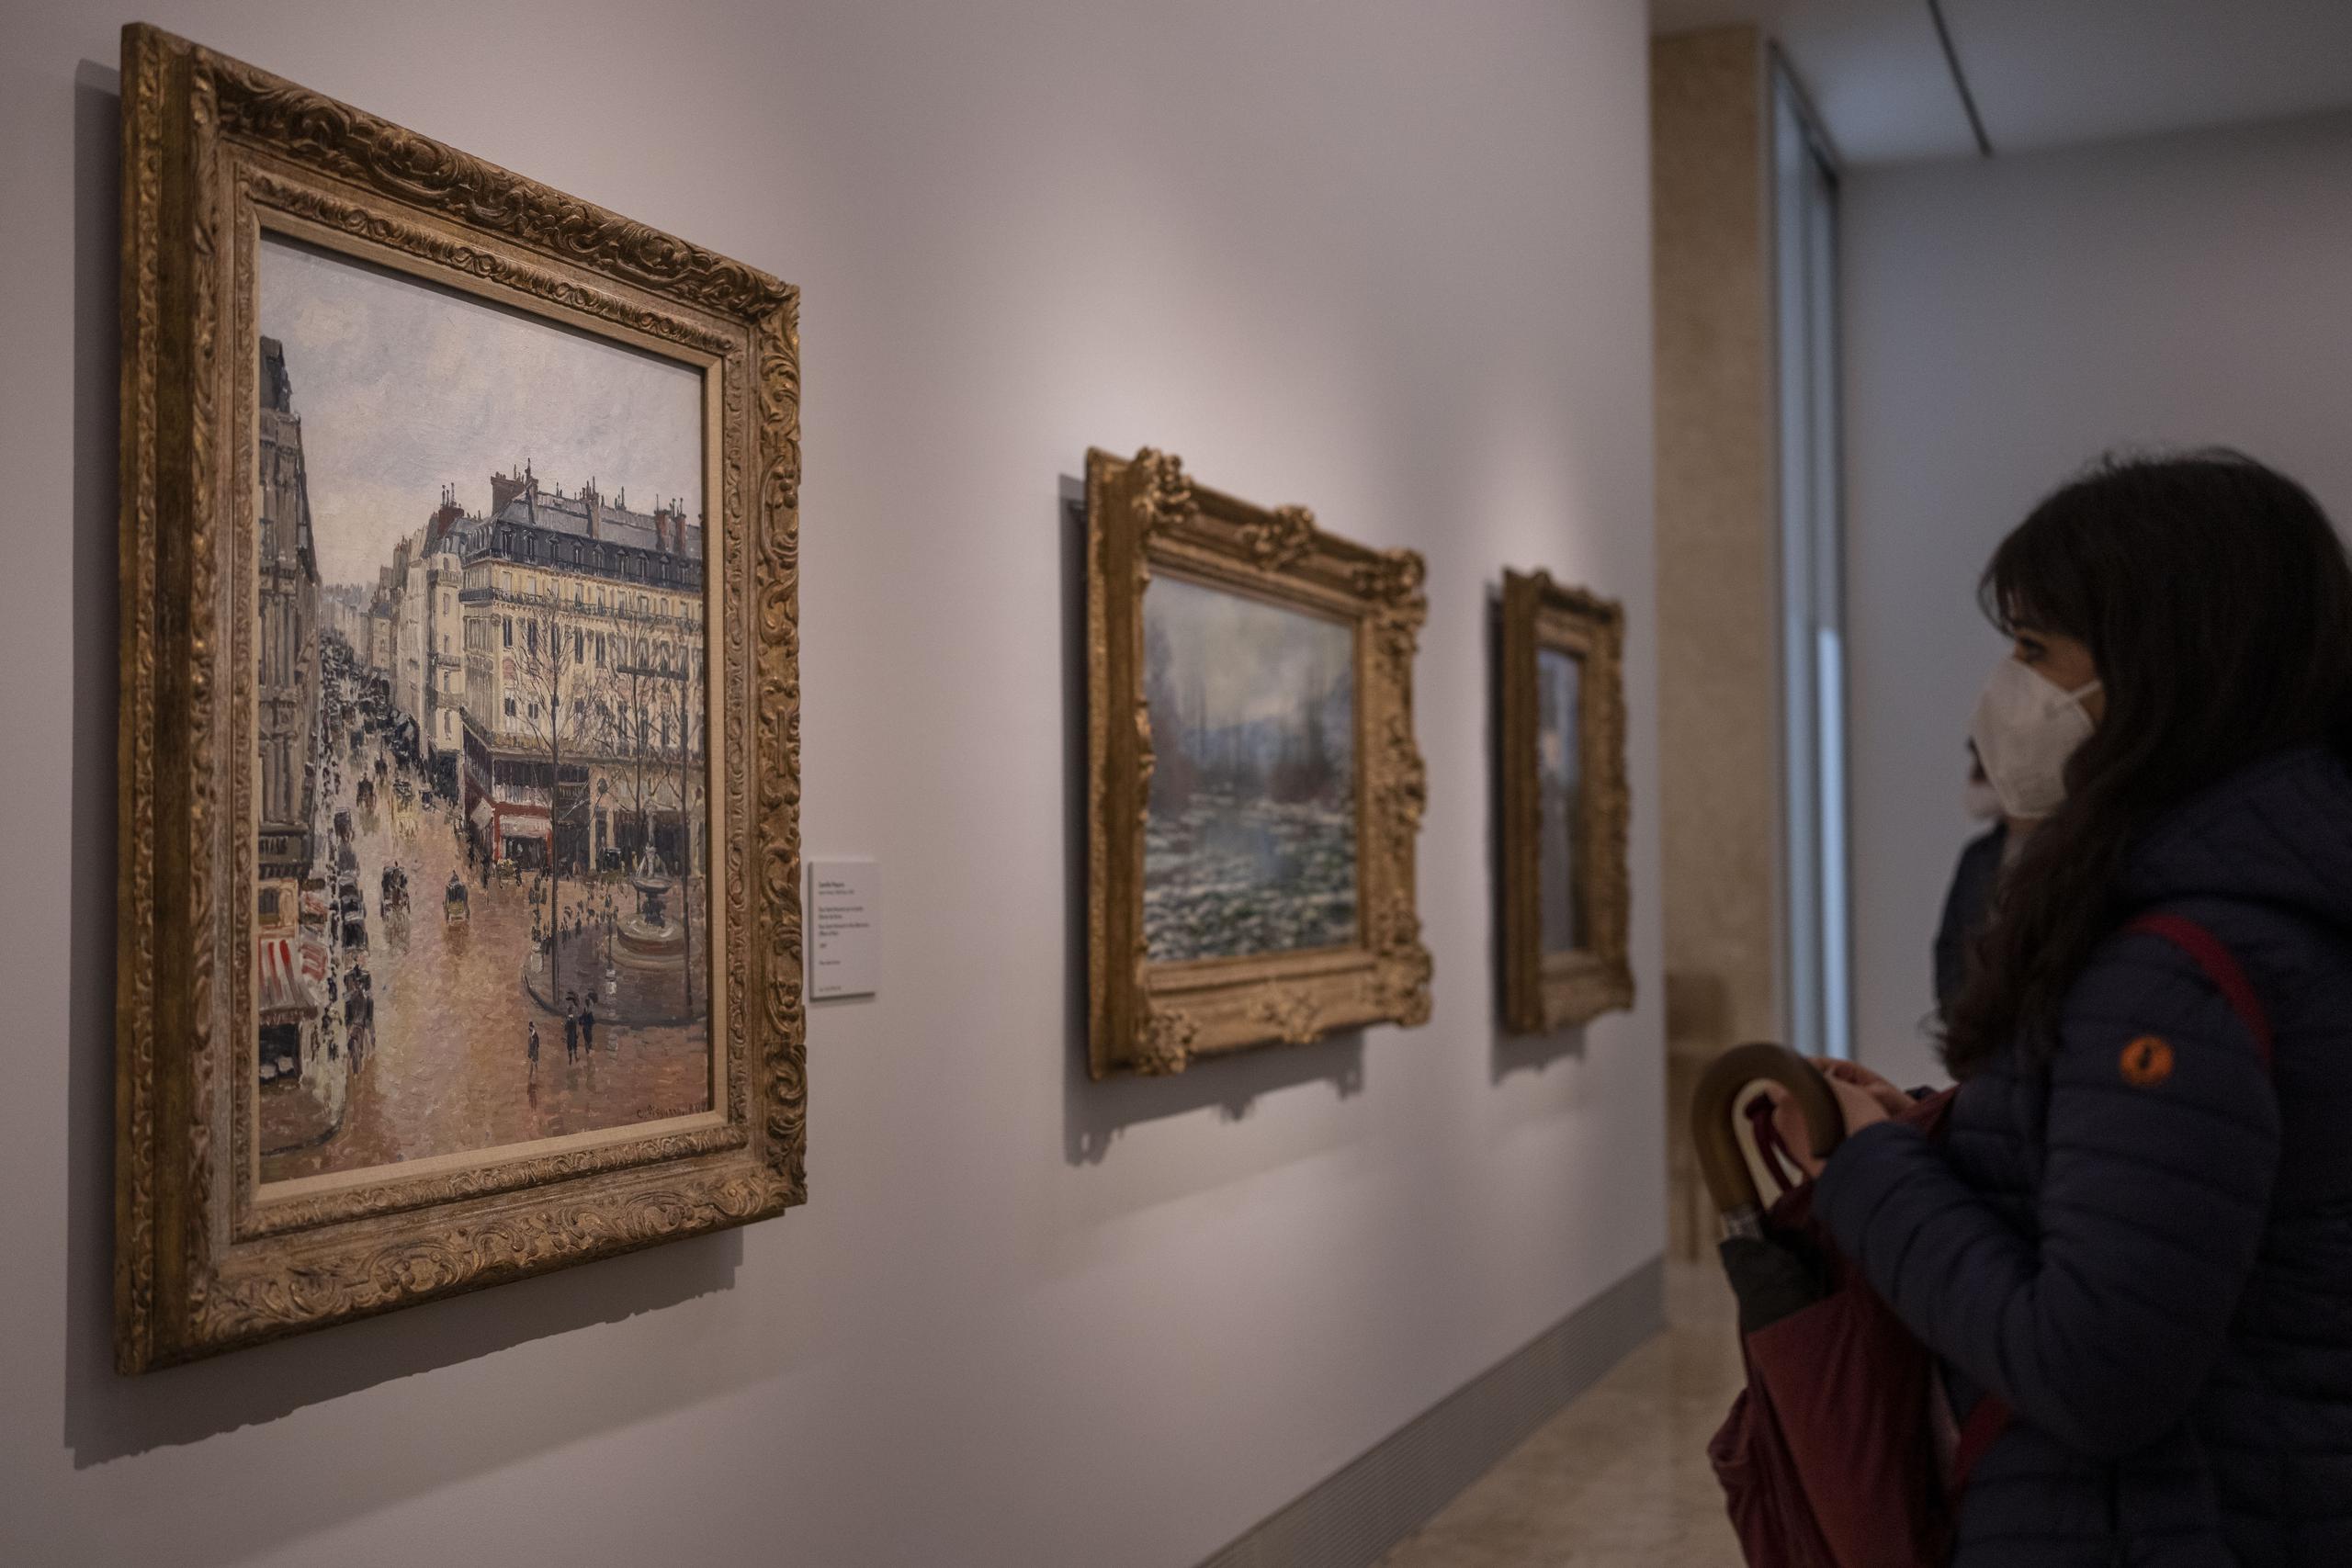 Una mujer mira la pintura impresionista "Rue St.-Honore, Apres-Midi, Effet de Pluie" (“Calle Saint-Honoré por la tarde, efecto de lluvia”) de Camille Pissarro de 1897 en el Museo Thyssen-Bornemisza en Madrid, España, el 22 de abril de 2022. (Foto AP/Manu Fernandez)